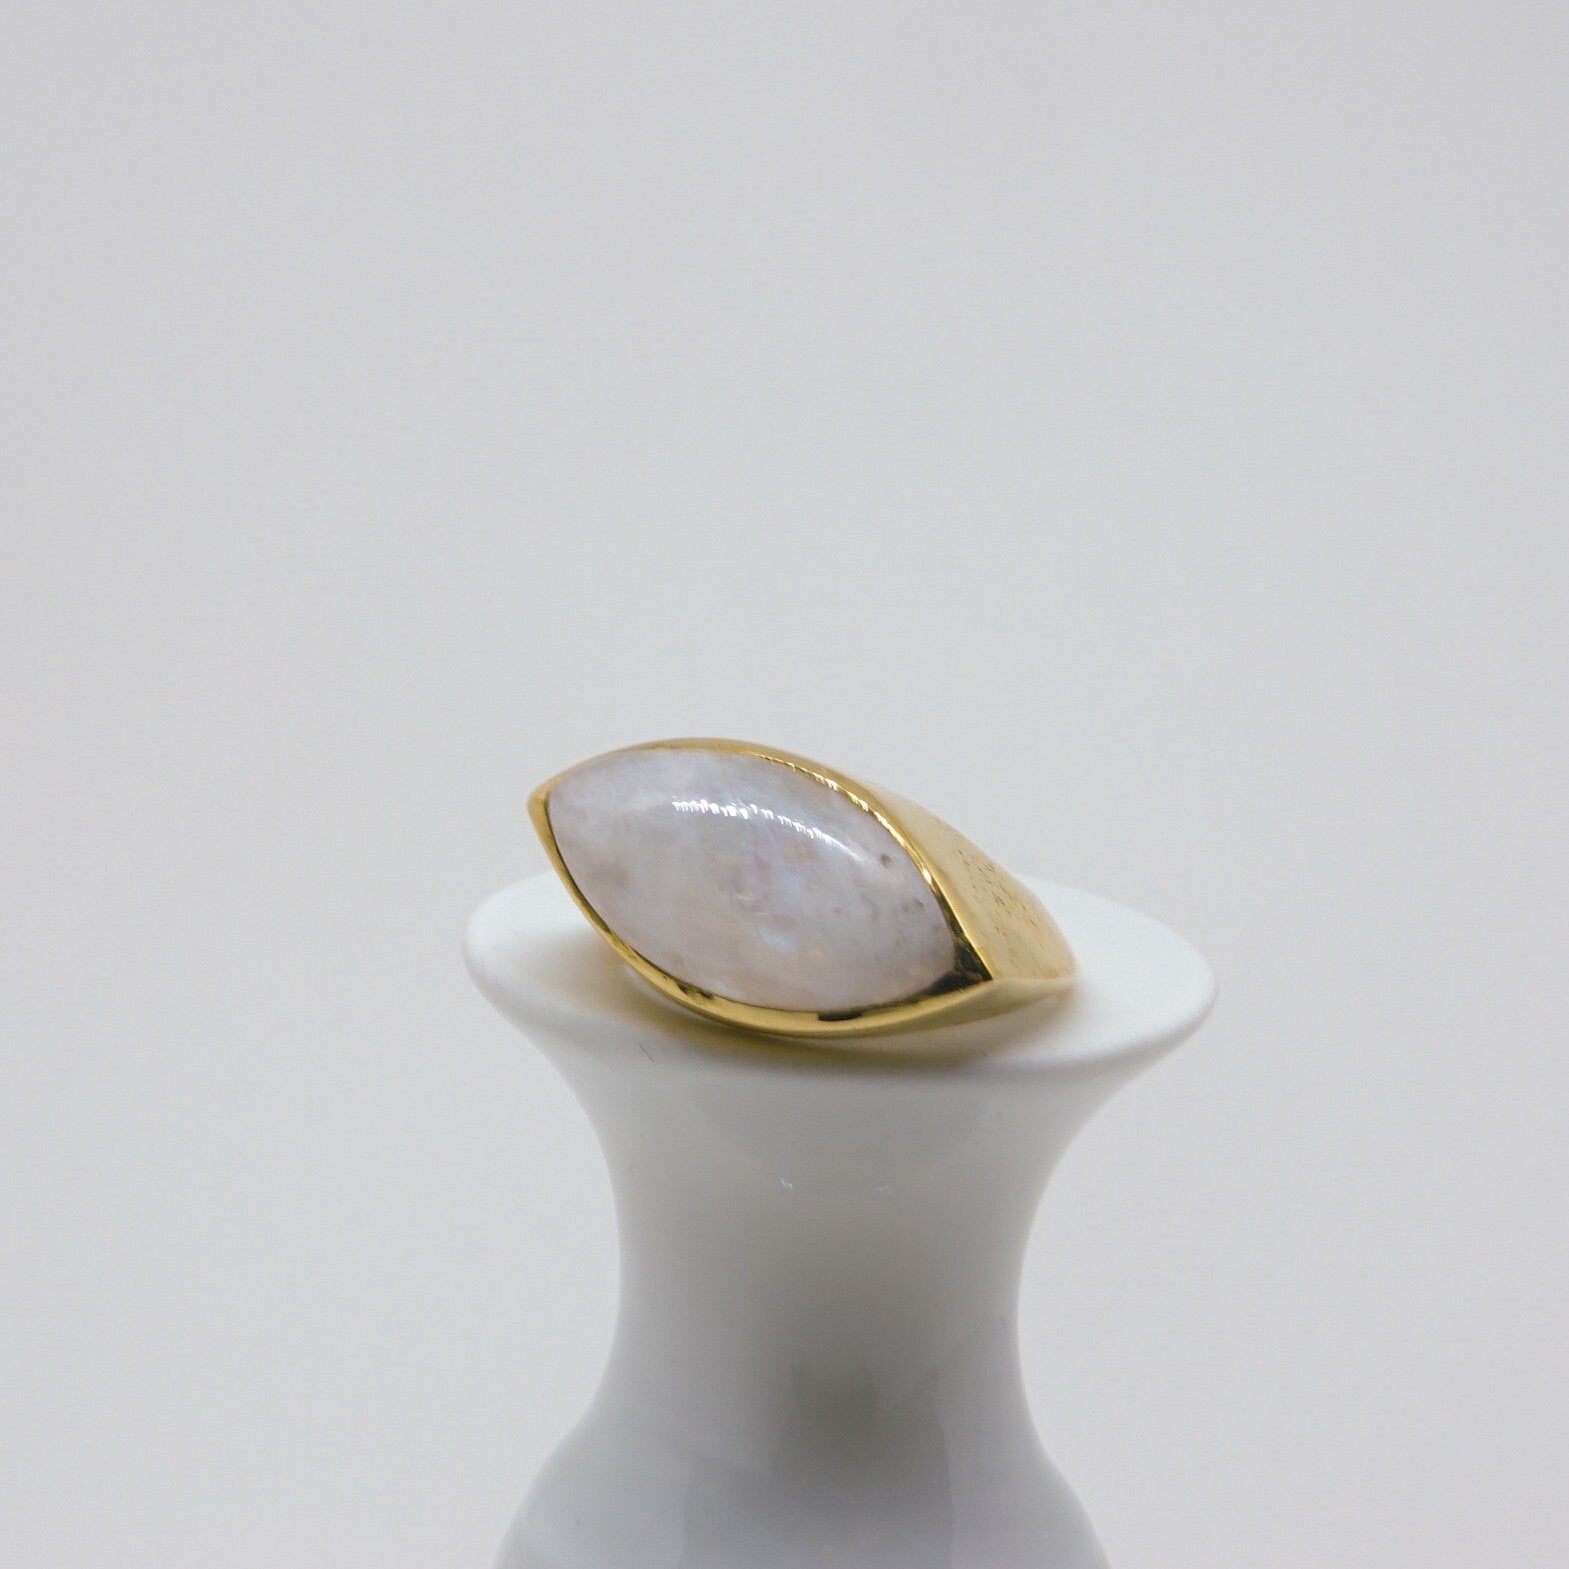 Großer Mondstein Ring mit ovalem Stein Halbedelstein augenförmig handgemacht BB6